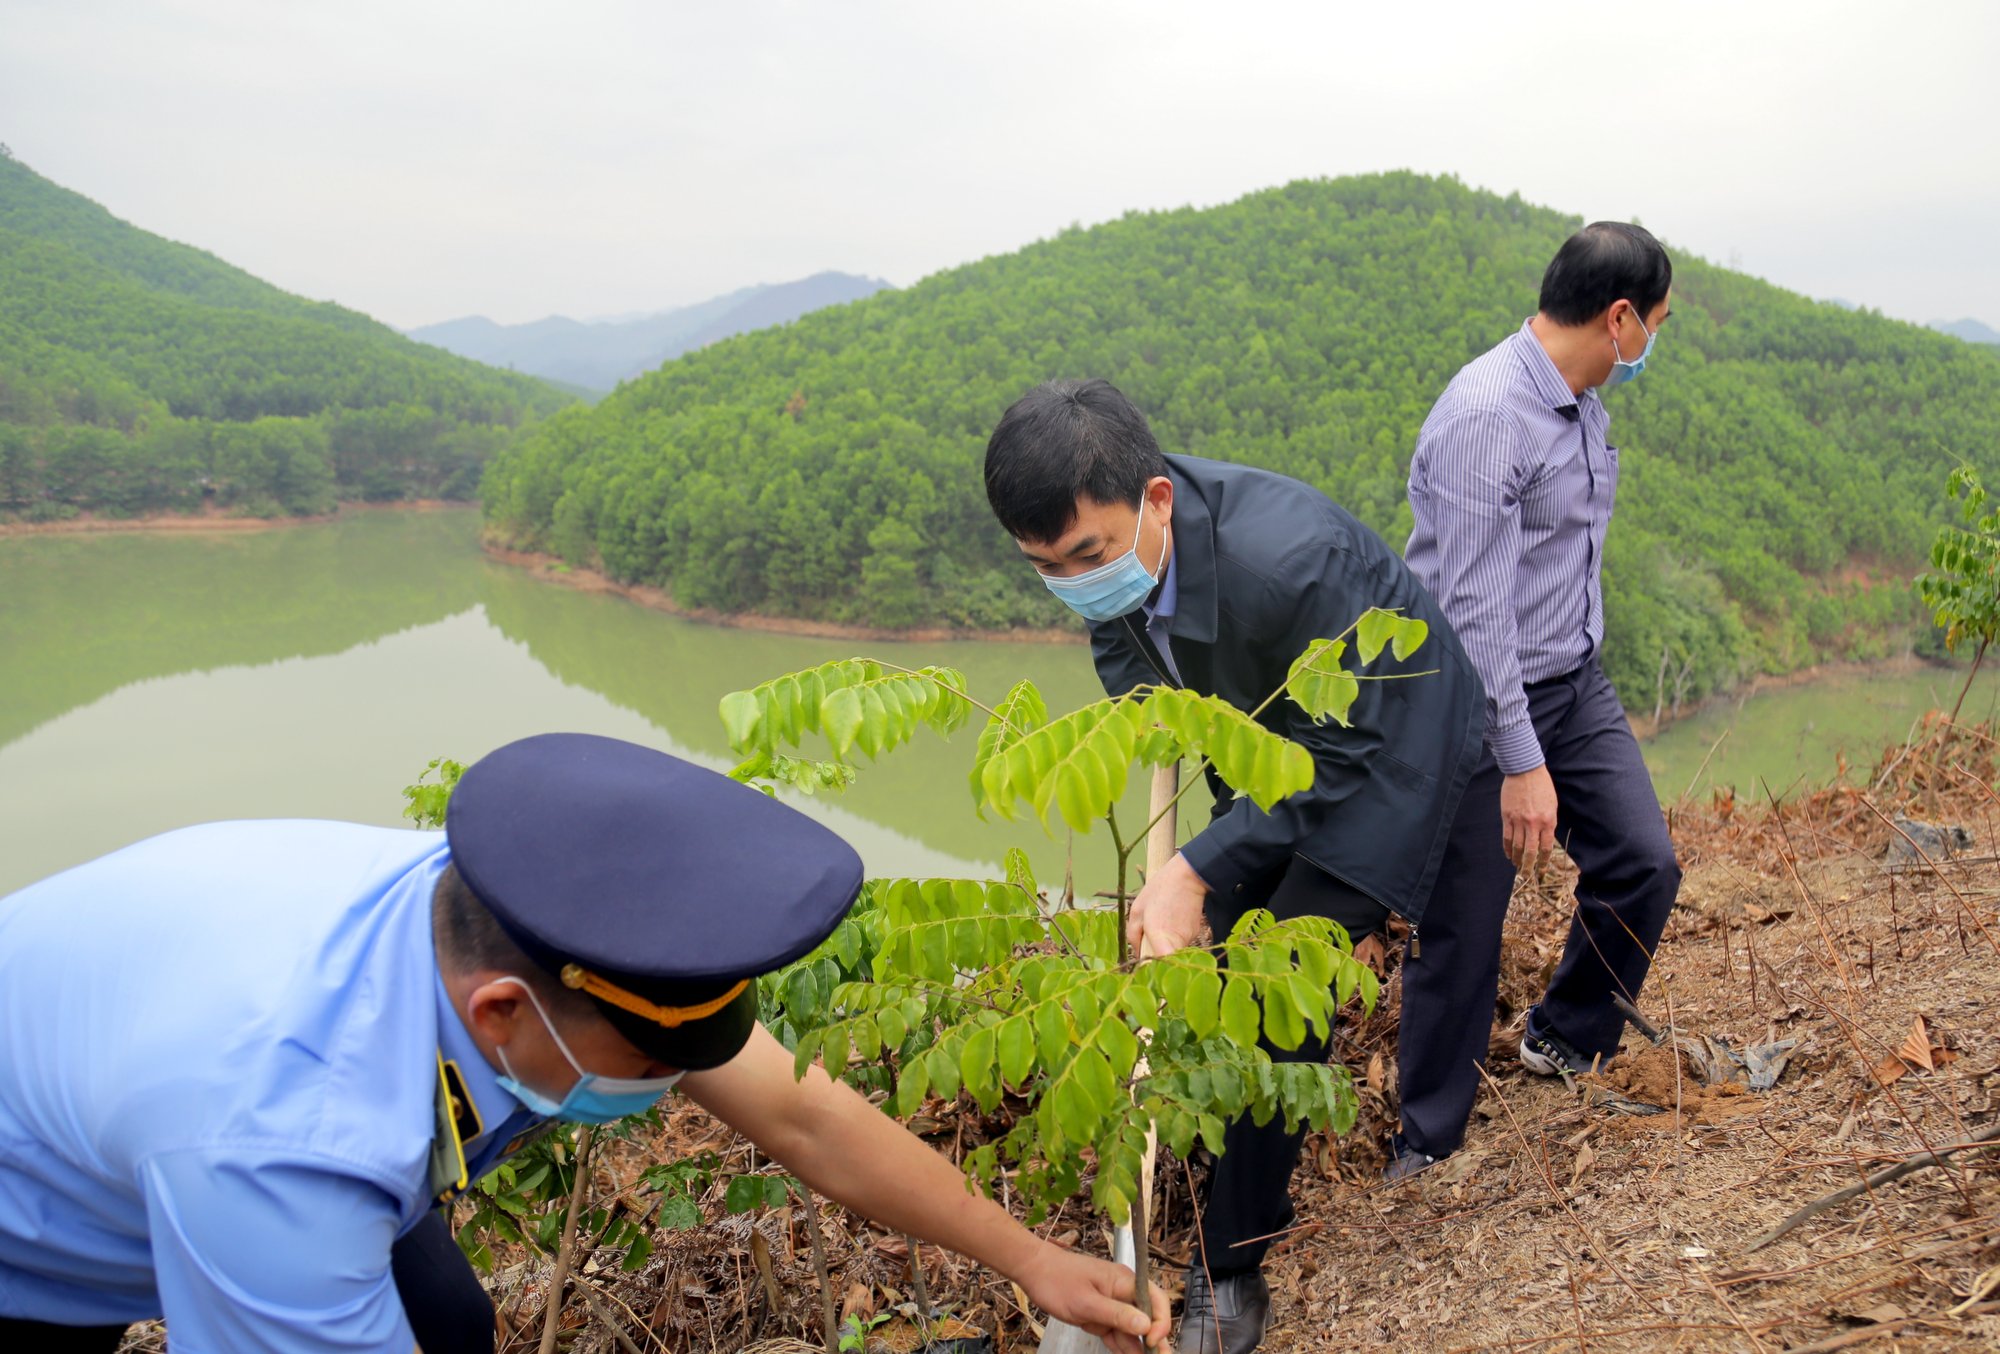 Phó Bí thư Thường trực Tỉnh ủy Ngô Hoàng Ngân trồng cây lim xanh - một trong những loại cây gỗ lớn được huyện Ba Chẽ xác định là đối tượng trồng chủ yếu để phát triển rừng gỗ lớn.